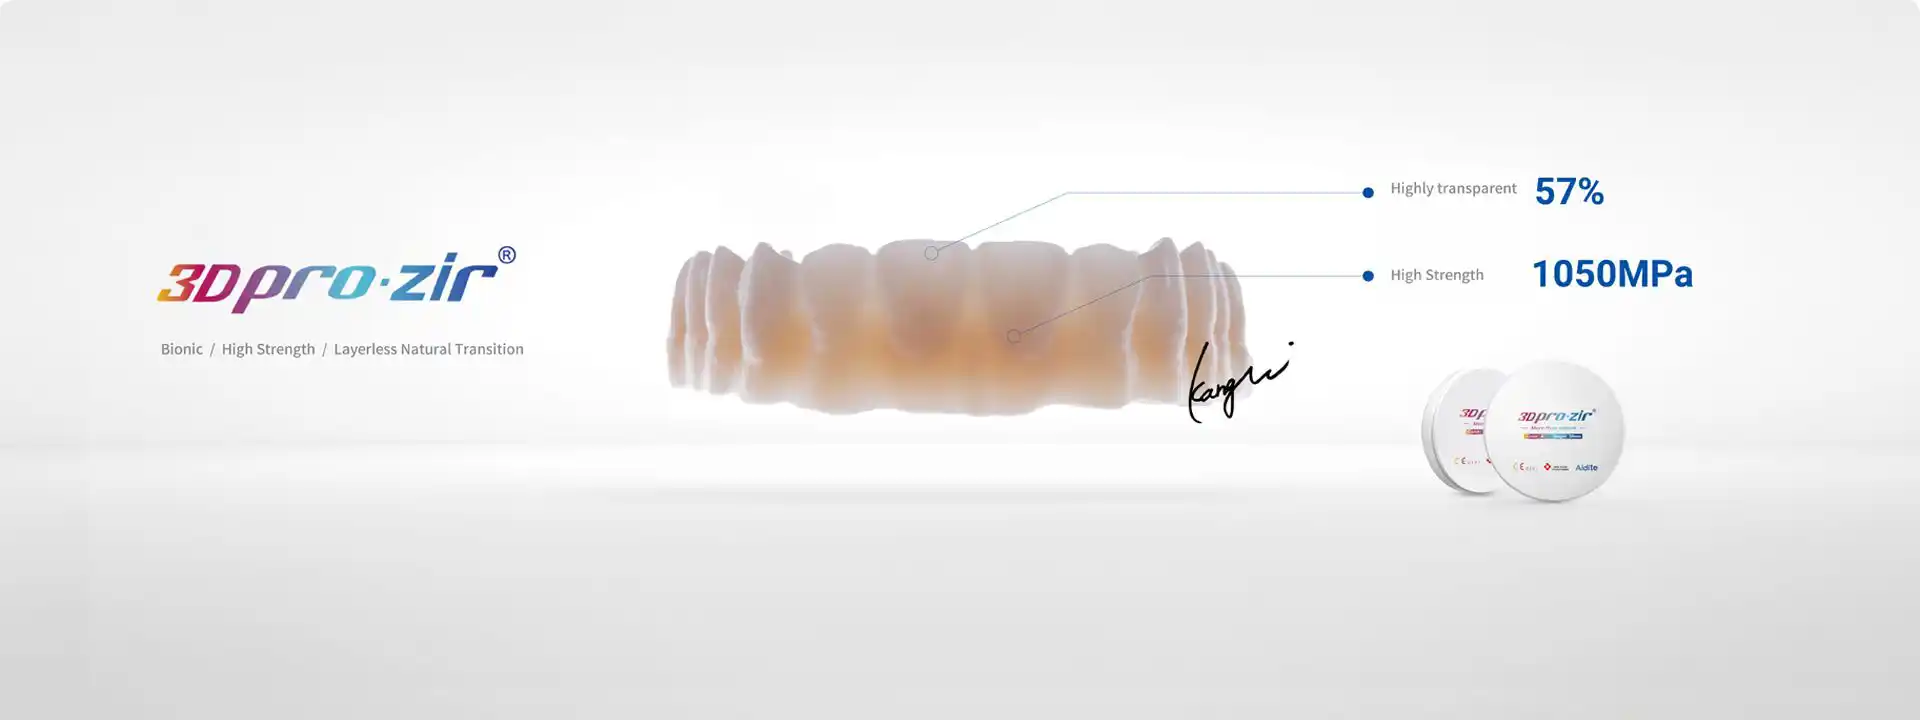 Aidite multilayer 3D pro dental zirconia discs